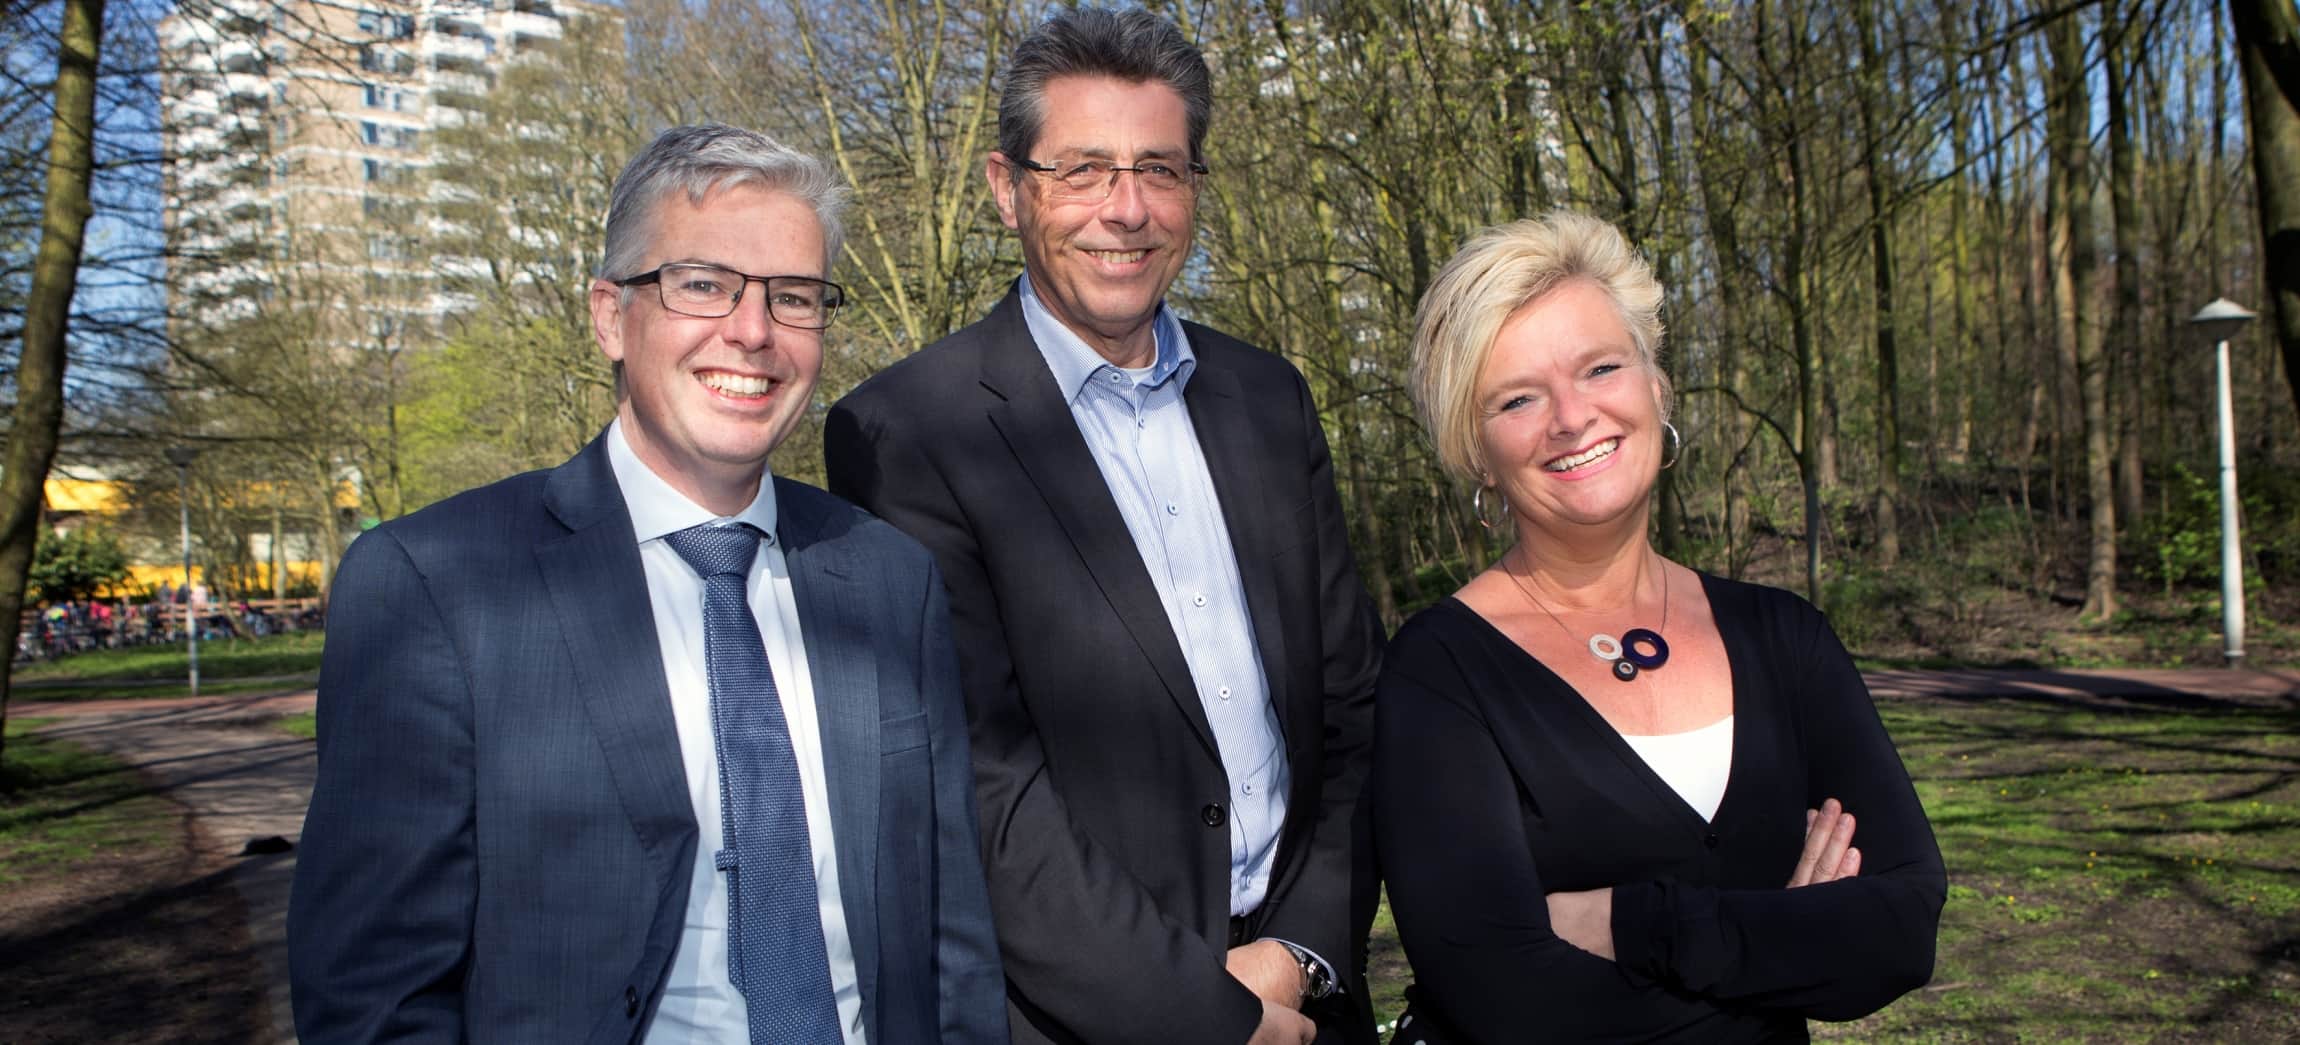 Raad van Bestuur Amstelring (2018): Ivo van der Klei, Eric Hisgen en Inge Borghuis (vlnr)